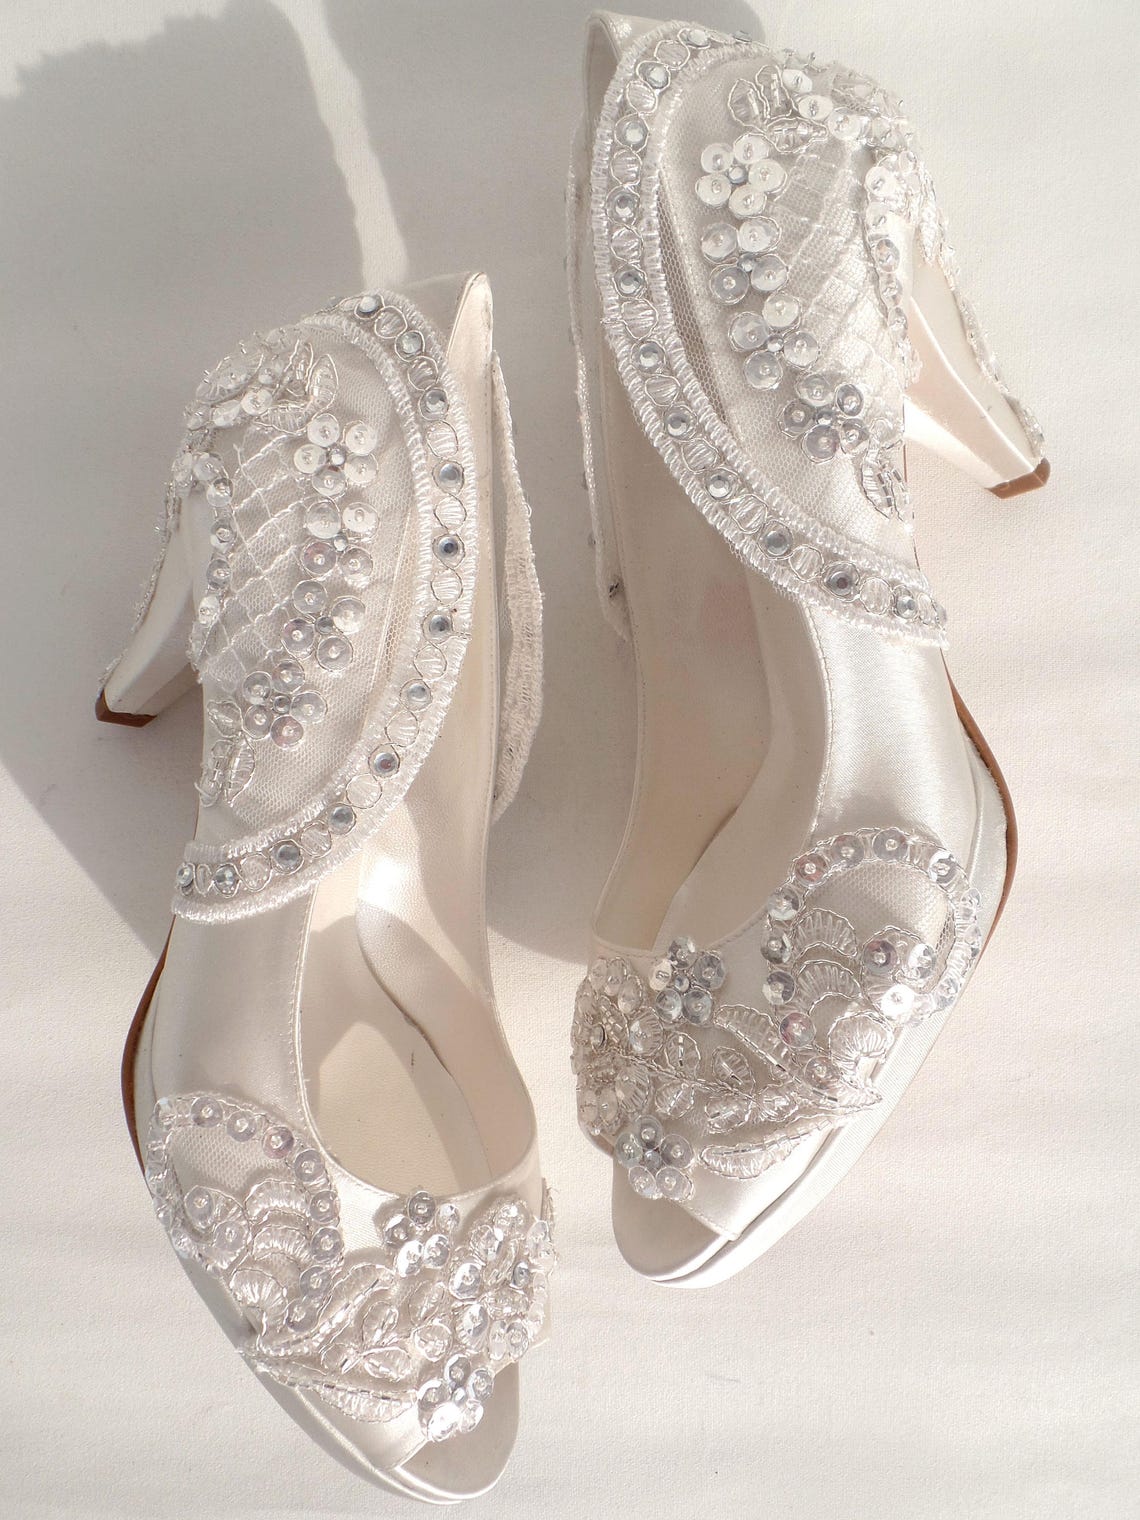 Bling Wedding Shoes Satin Bridal Shoes with Rhinestones | Etsy